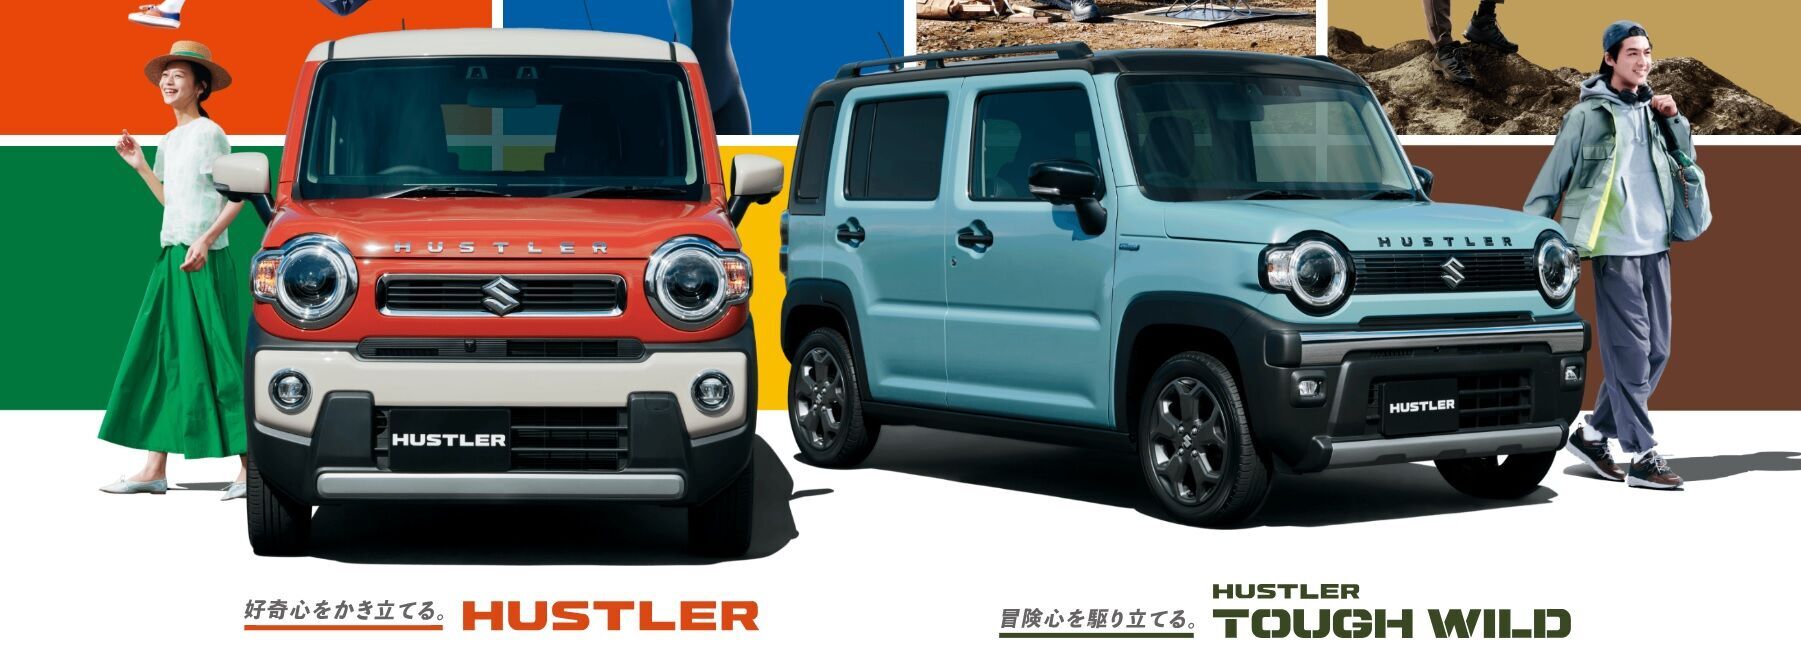 Вдвое дешевле Duster: Suzuki начала продажи бюджетного кроссовера (видео)